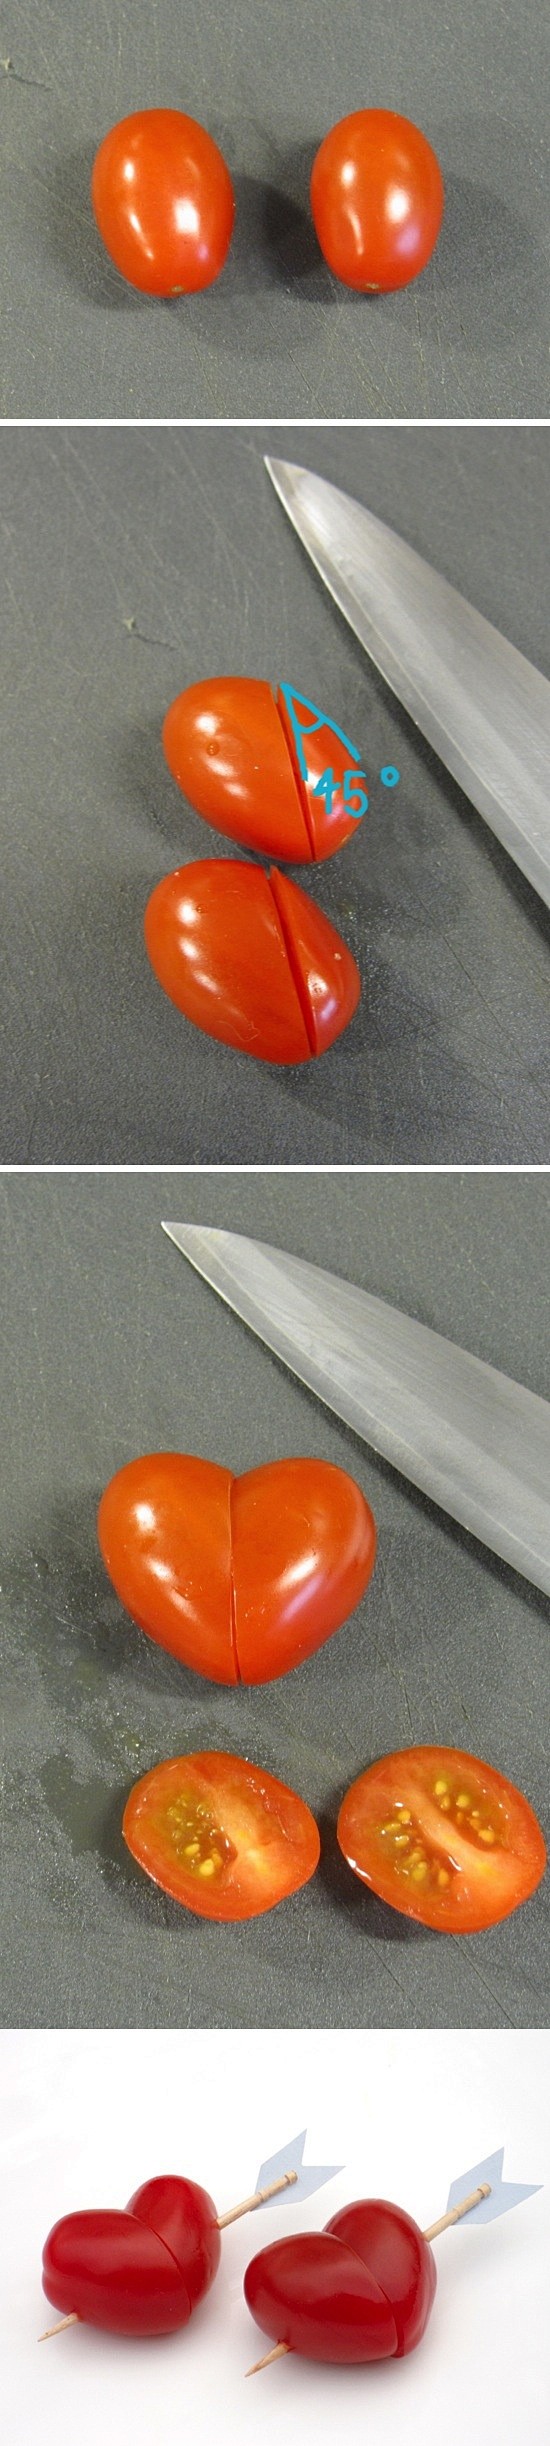 Grape Tomato Hearts